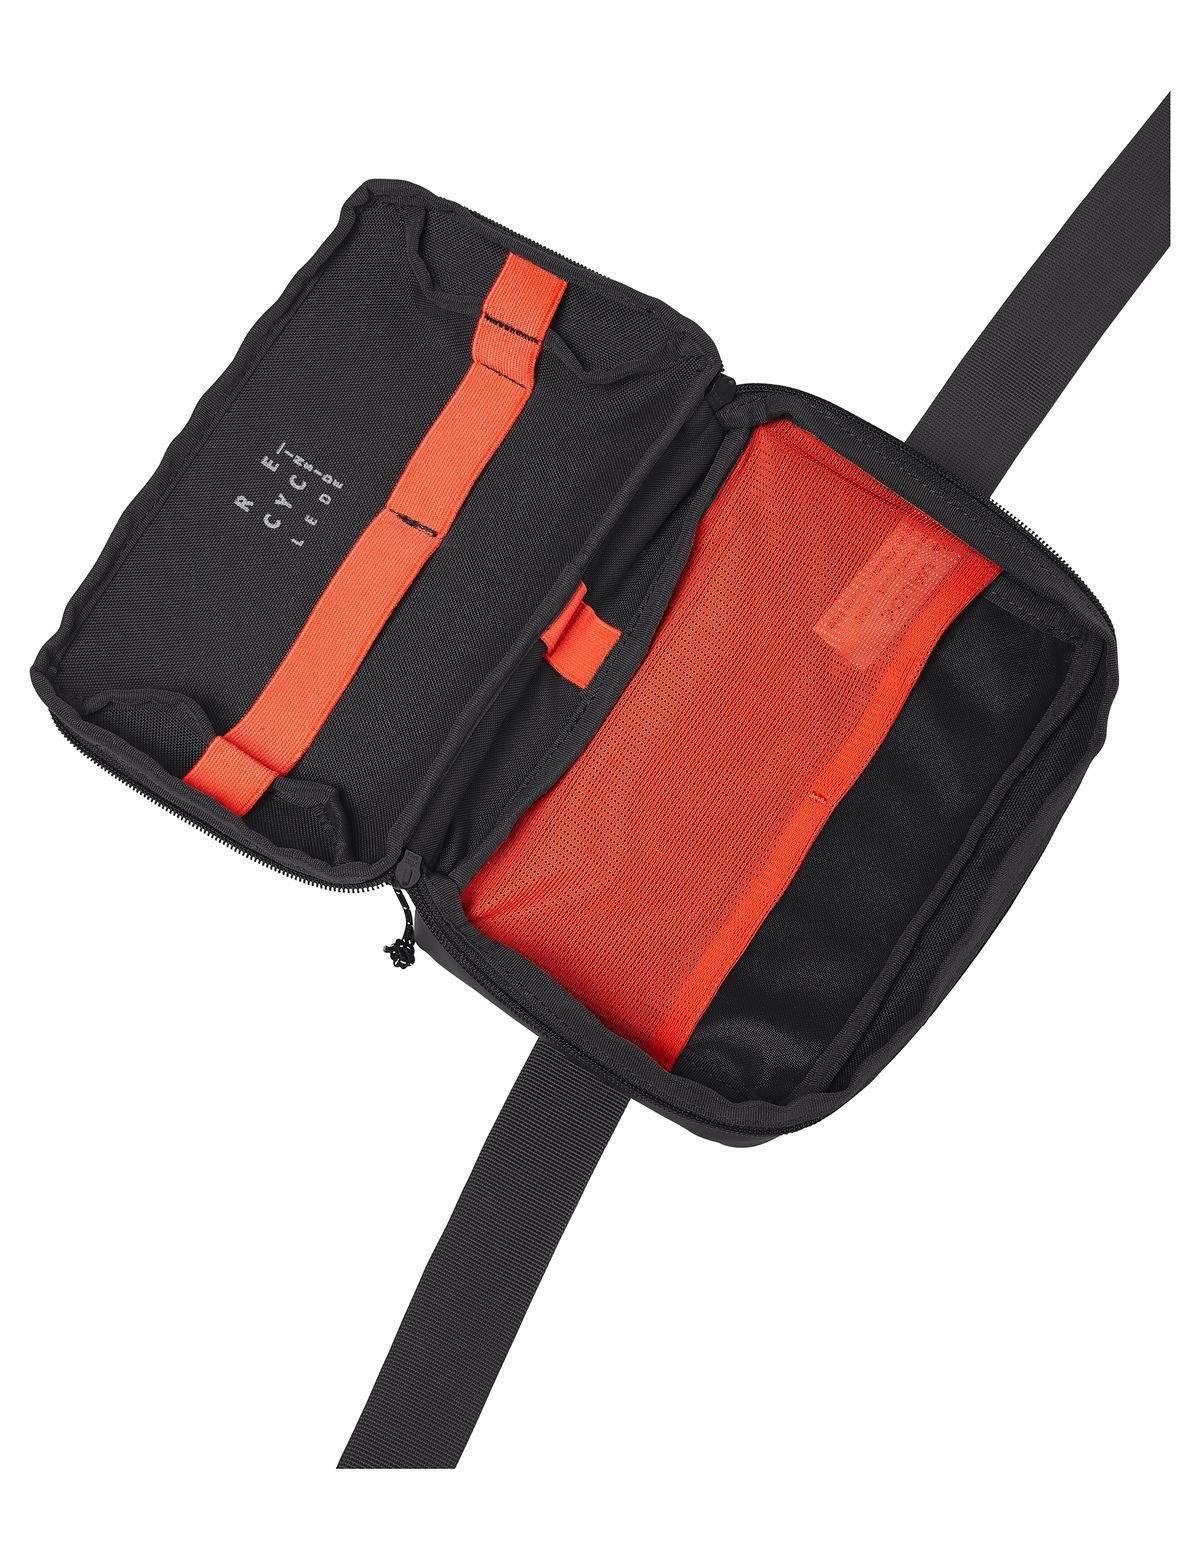 Mineo Tech Pouch Hüfttasche von Vaude - Laure Bags and Travel